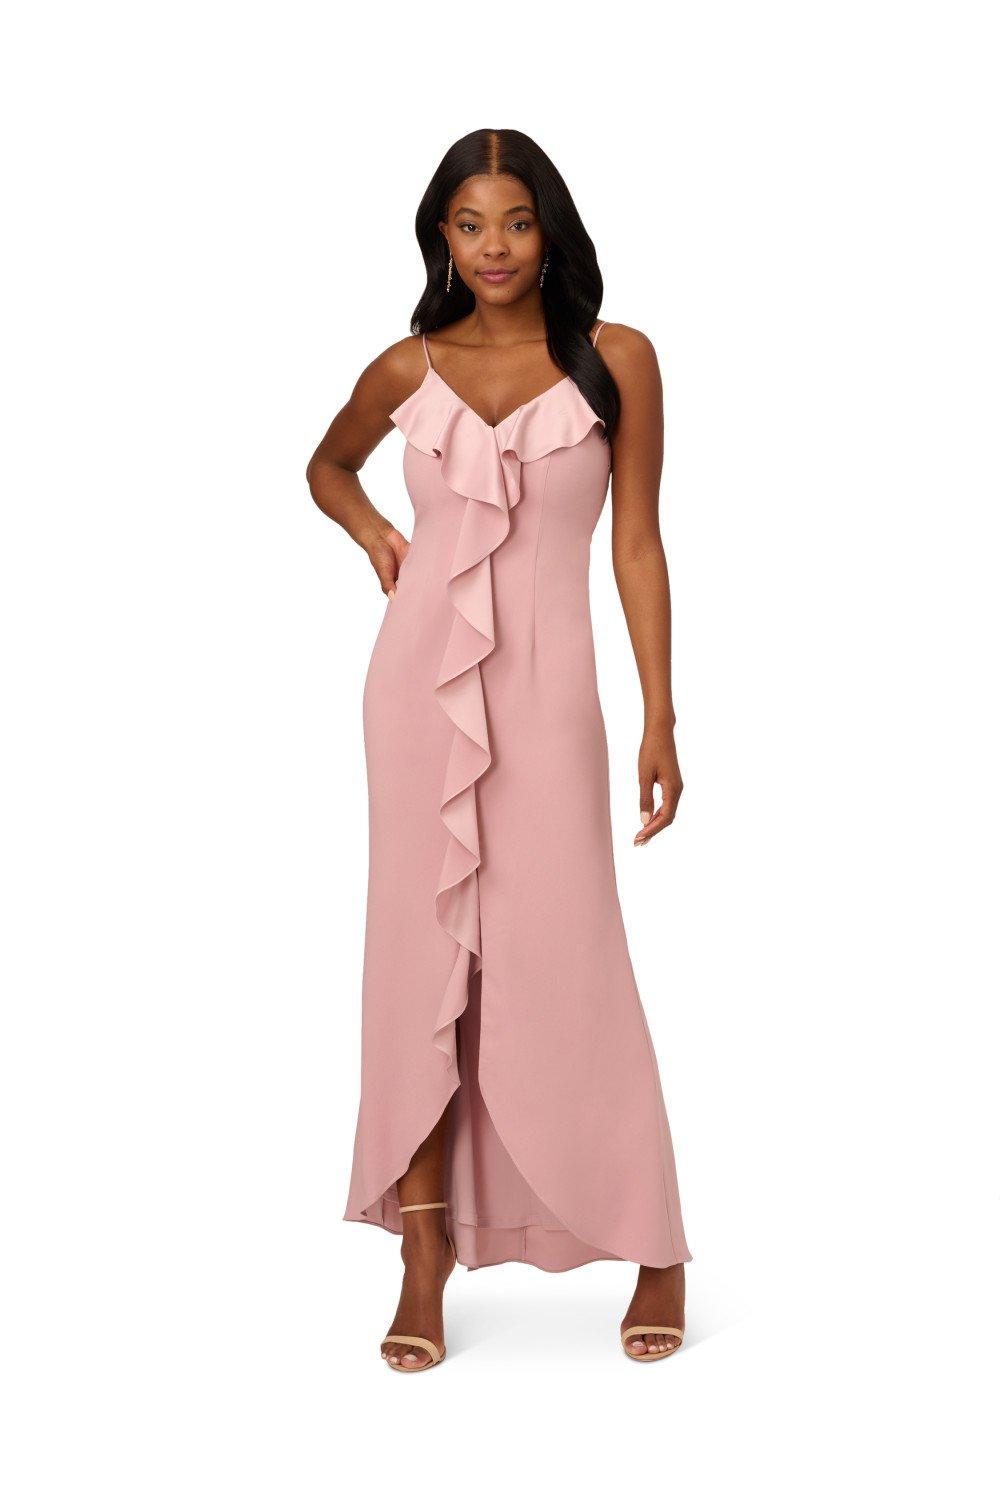 Anna Kosturova Silk Billowy Sleeve Midi Wrap Dress - Pink Seafoam Medium / Pink Seafoam